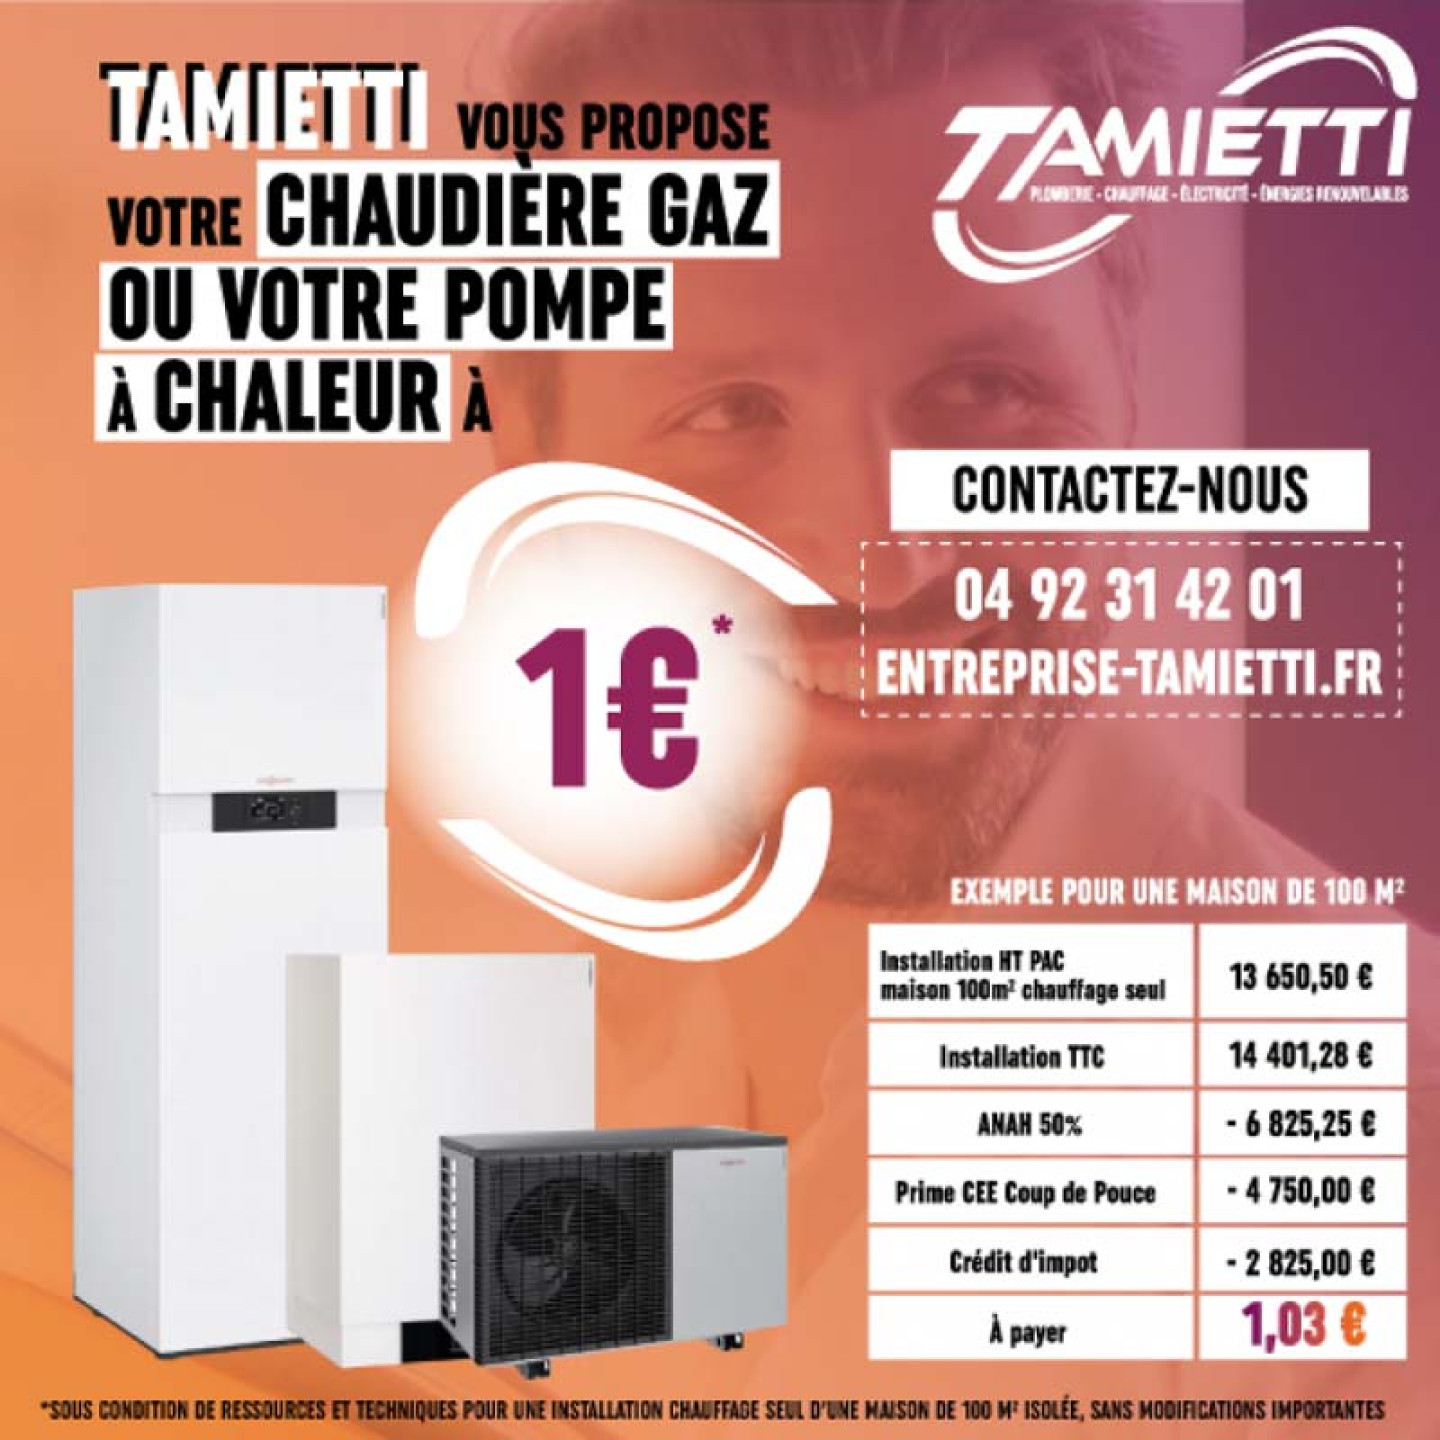 Tamietti propose la chaudière à partir de 1 €